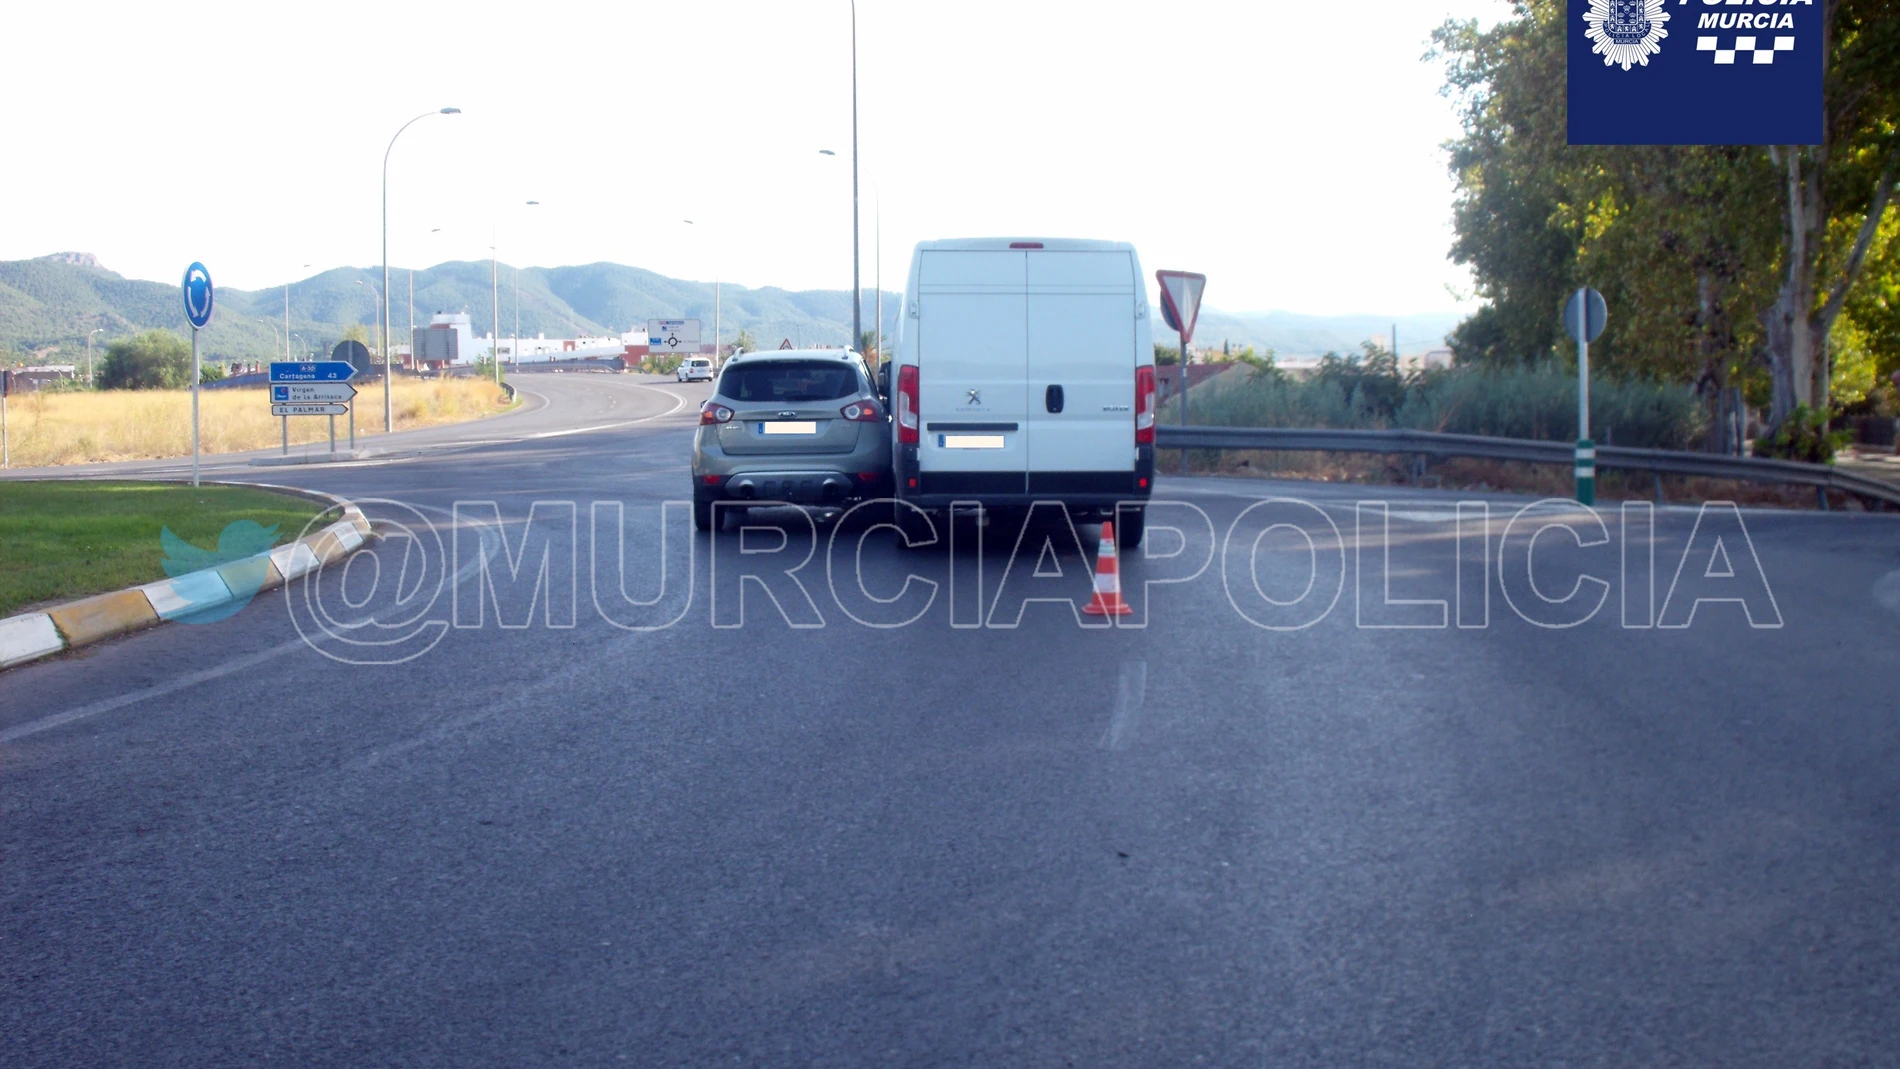 Sucesos.- Detenidos en Murcia 3 conductores ebrios, uno de ellos era novel y sextuplicaba la tasa de alcohol